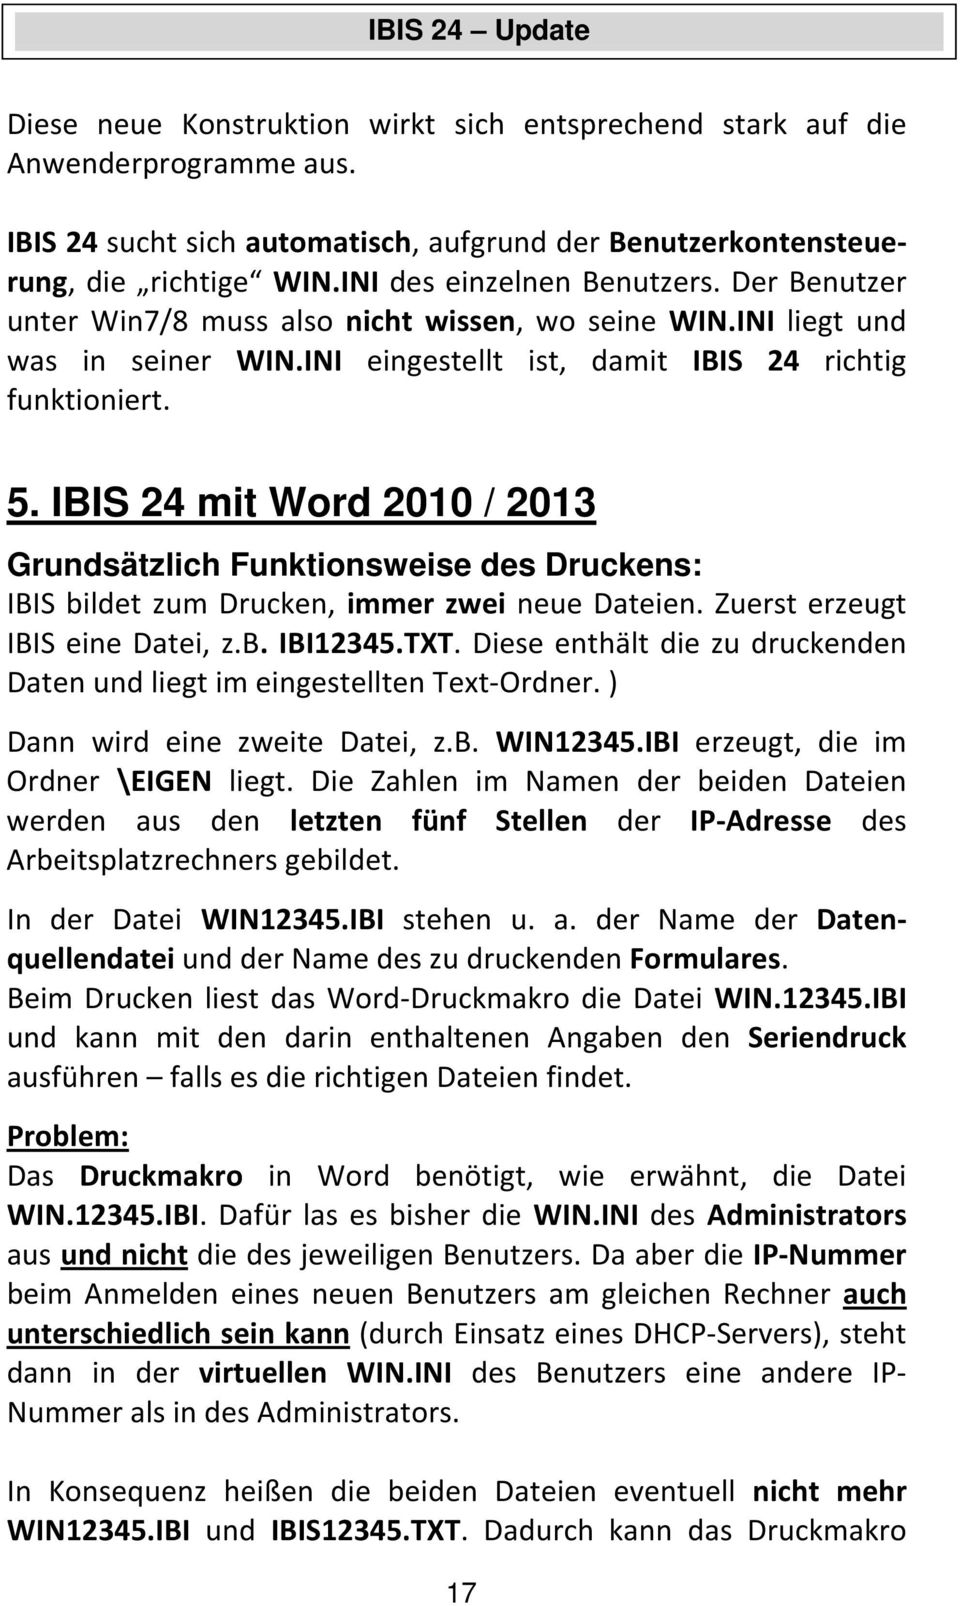 IBIS 24 mit Word 2010 / 2013 Grundsätzlich Funktionsweise des Druckens: IBIS bildet zum Drucken, immer zwei neue Dateien. Zuerst erzeugt IBIS eine Datei, z.b. IBI12345.TXT.